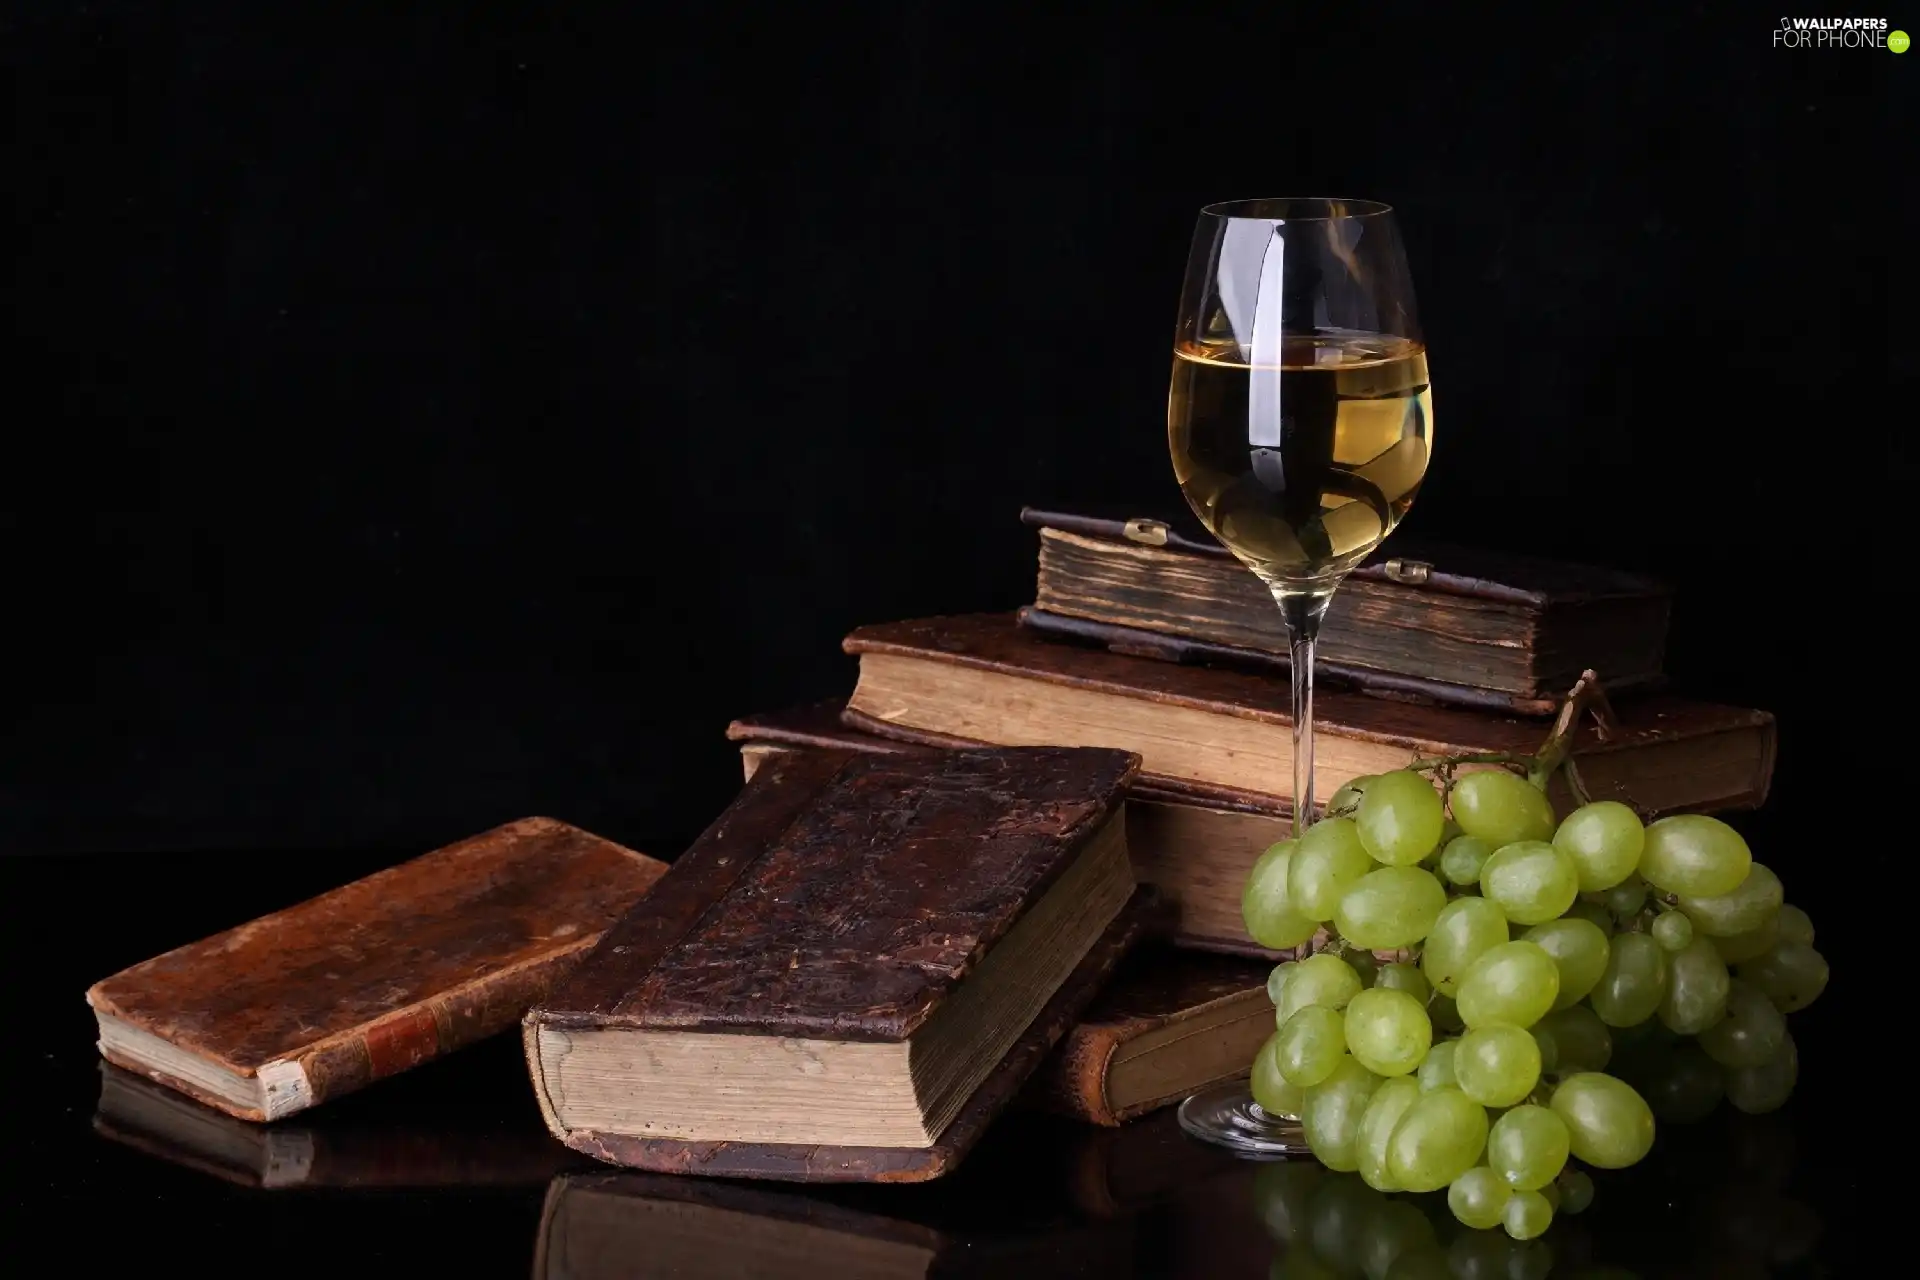 Books, Grapes, Wine